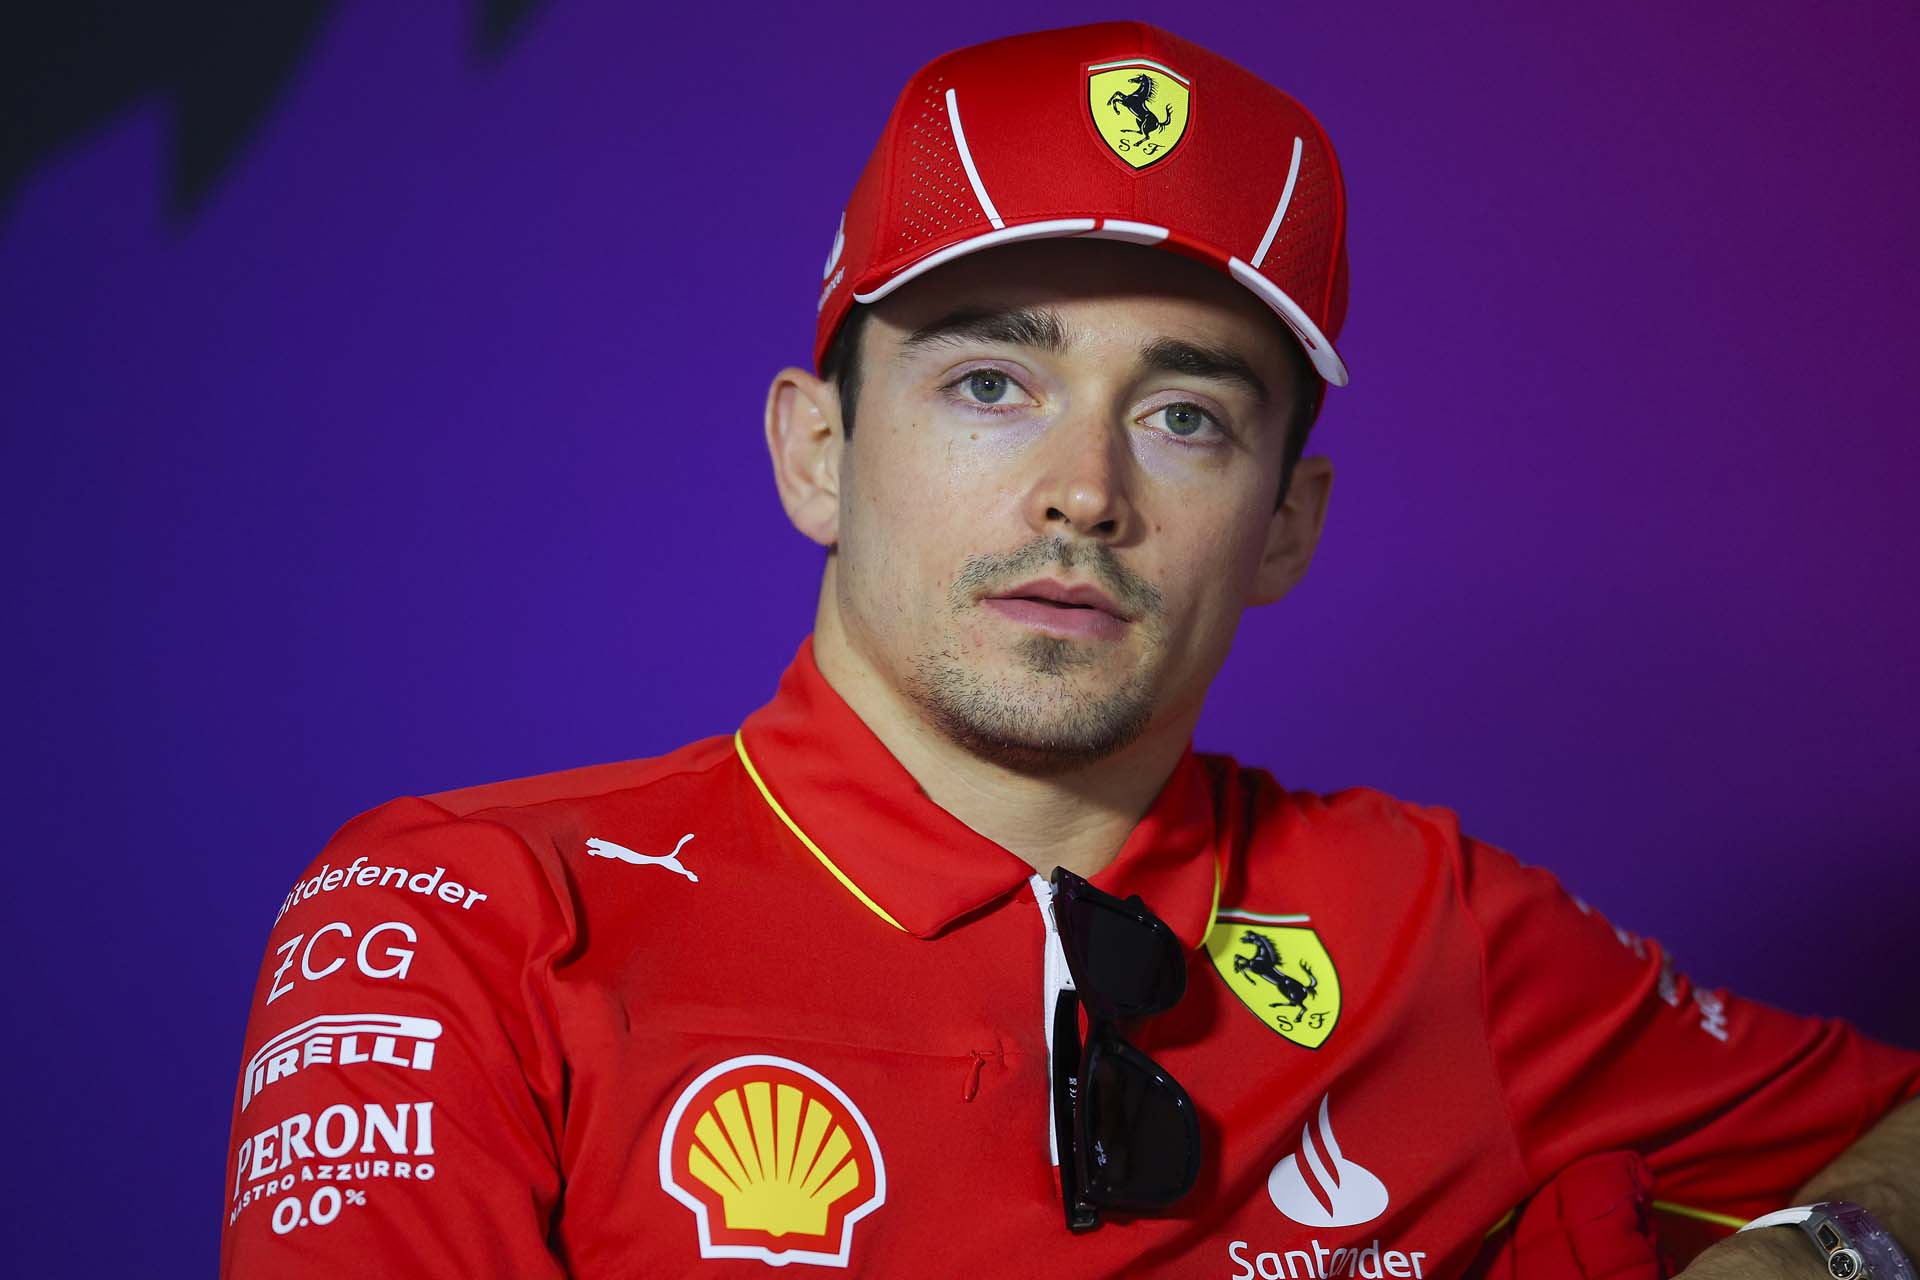 Leclerc a fő rivális a Bahreini Nagydíjon Verstappen számára